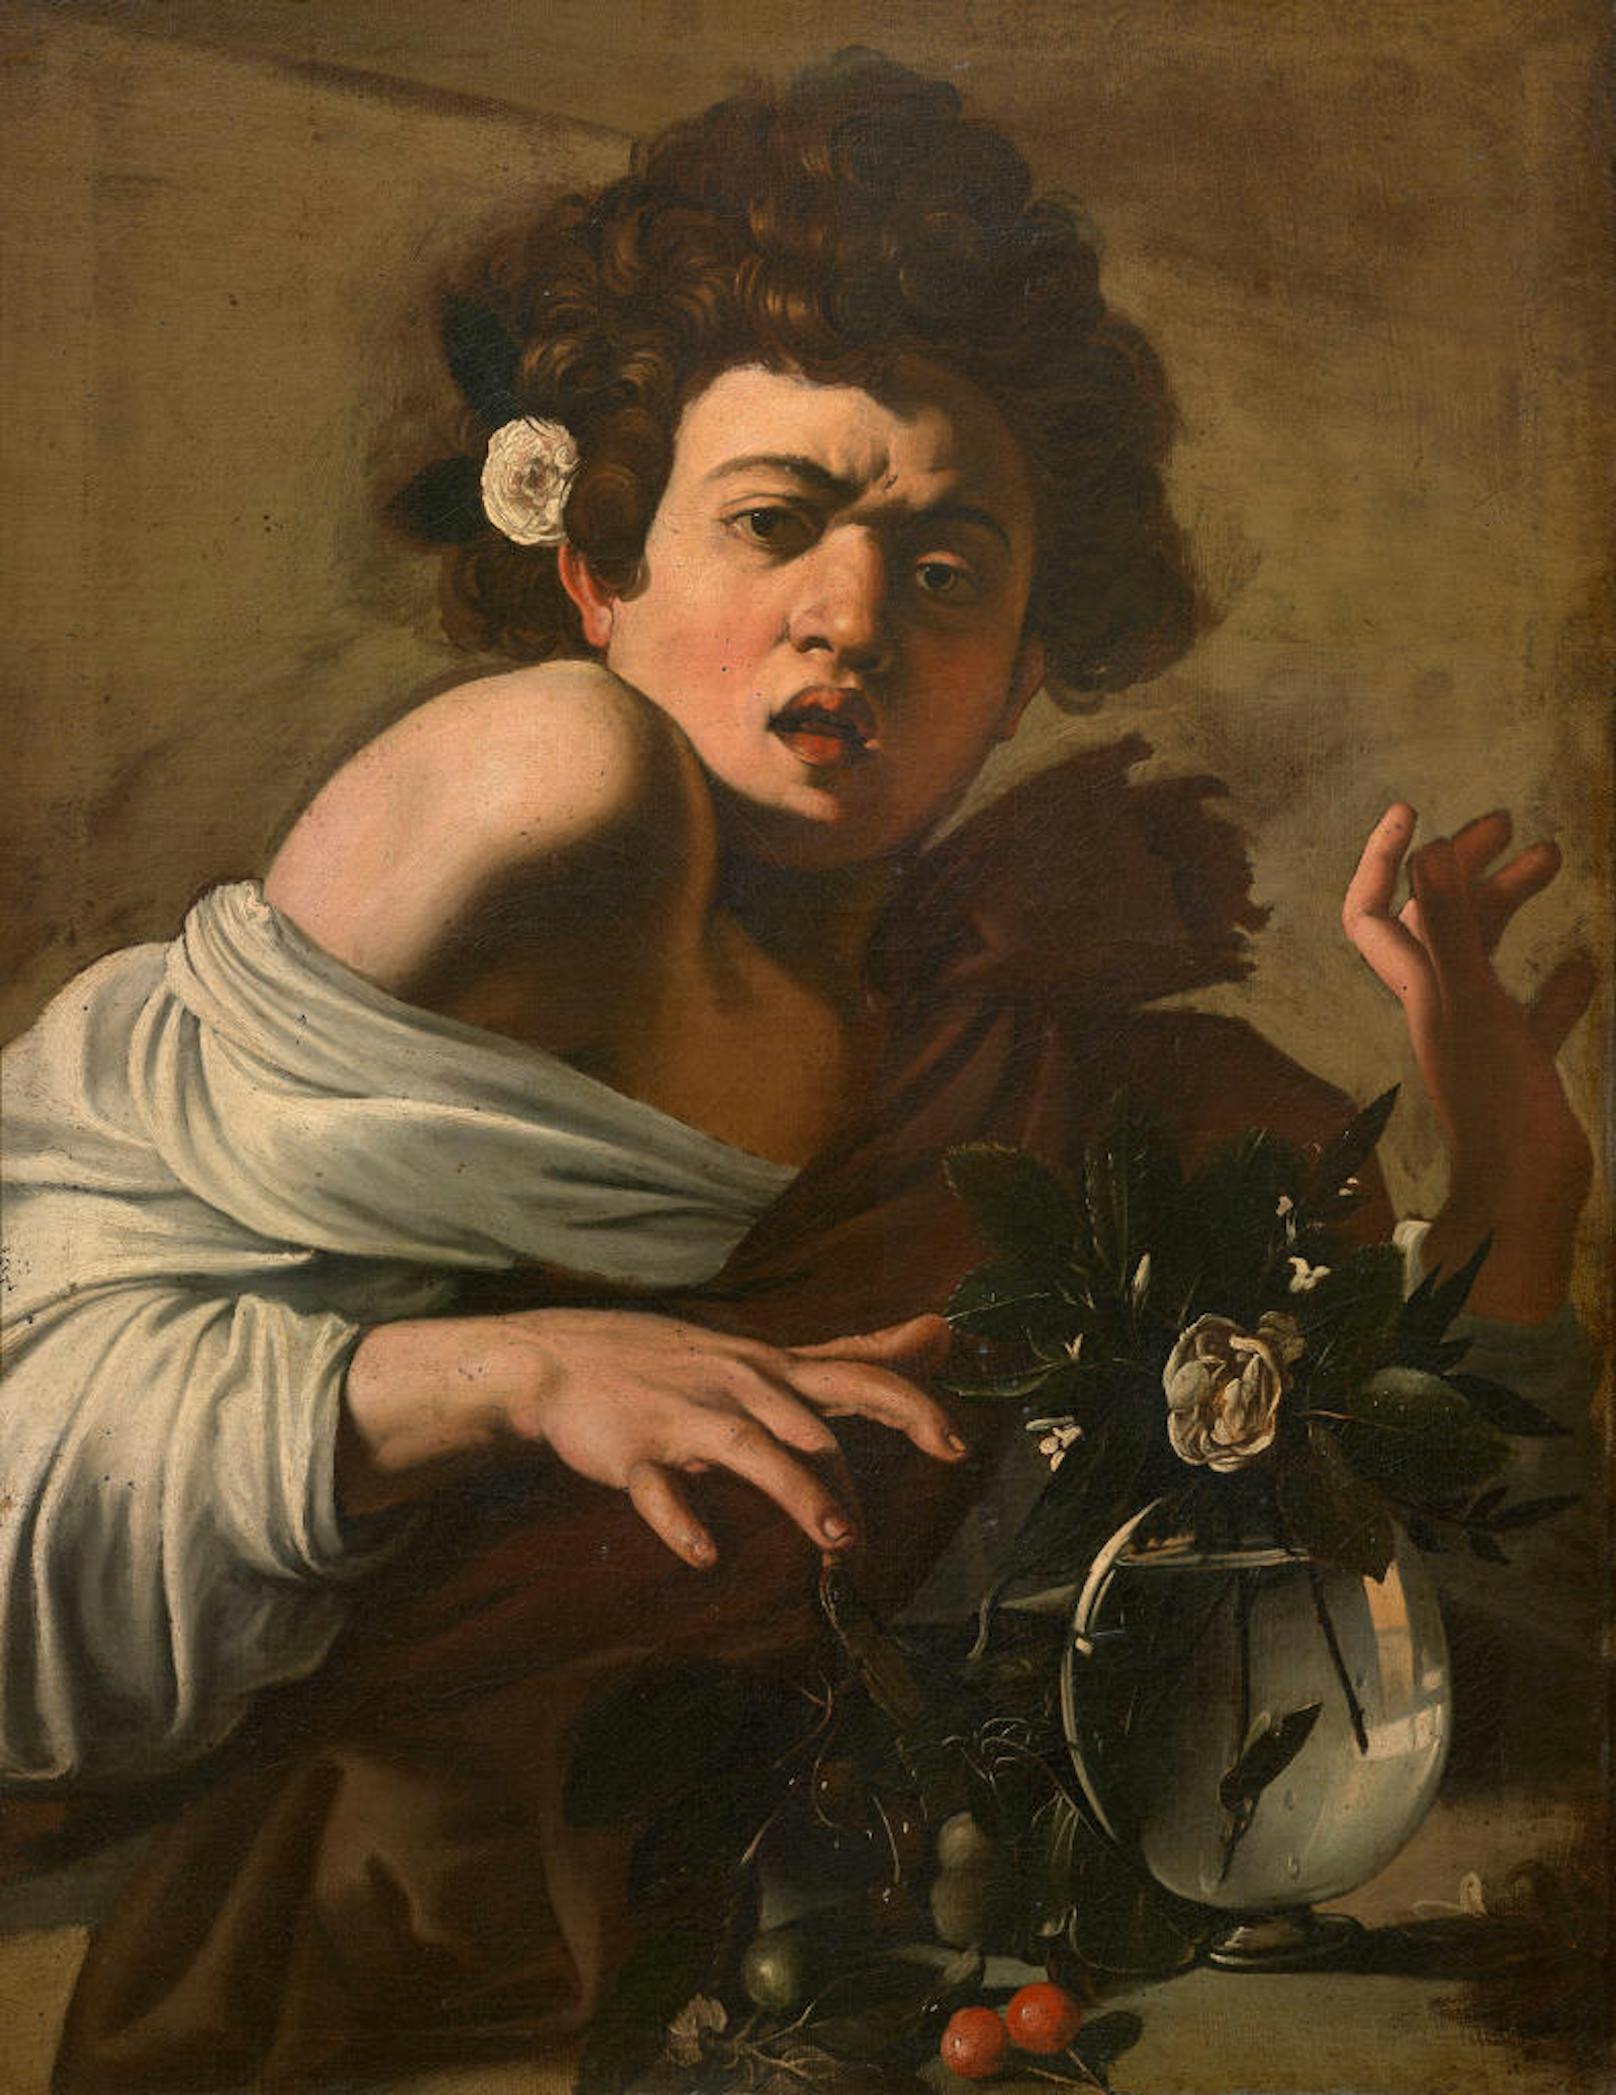 Michelangelo Merisi da Caravaggio (Mailand 1571-1610 Porto Ercole):
Knabe, von einer Eidechse gebissen
Um 1597/98